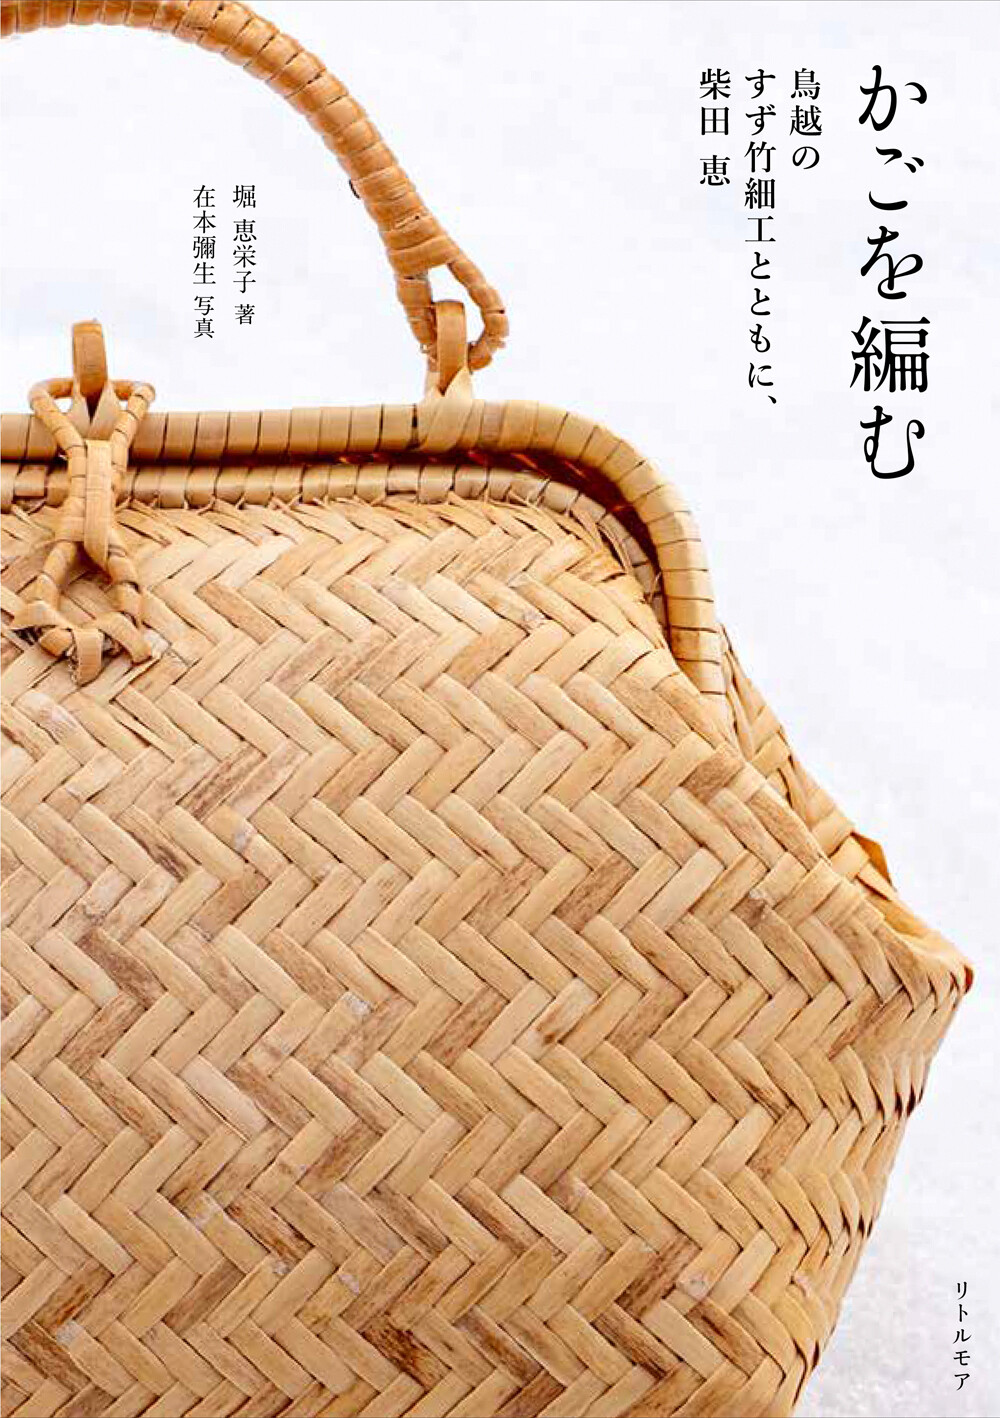 かごを編む 鳥越のすず竹細工とともに、柴田 恵 | リトルモア